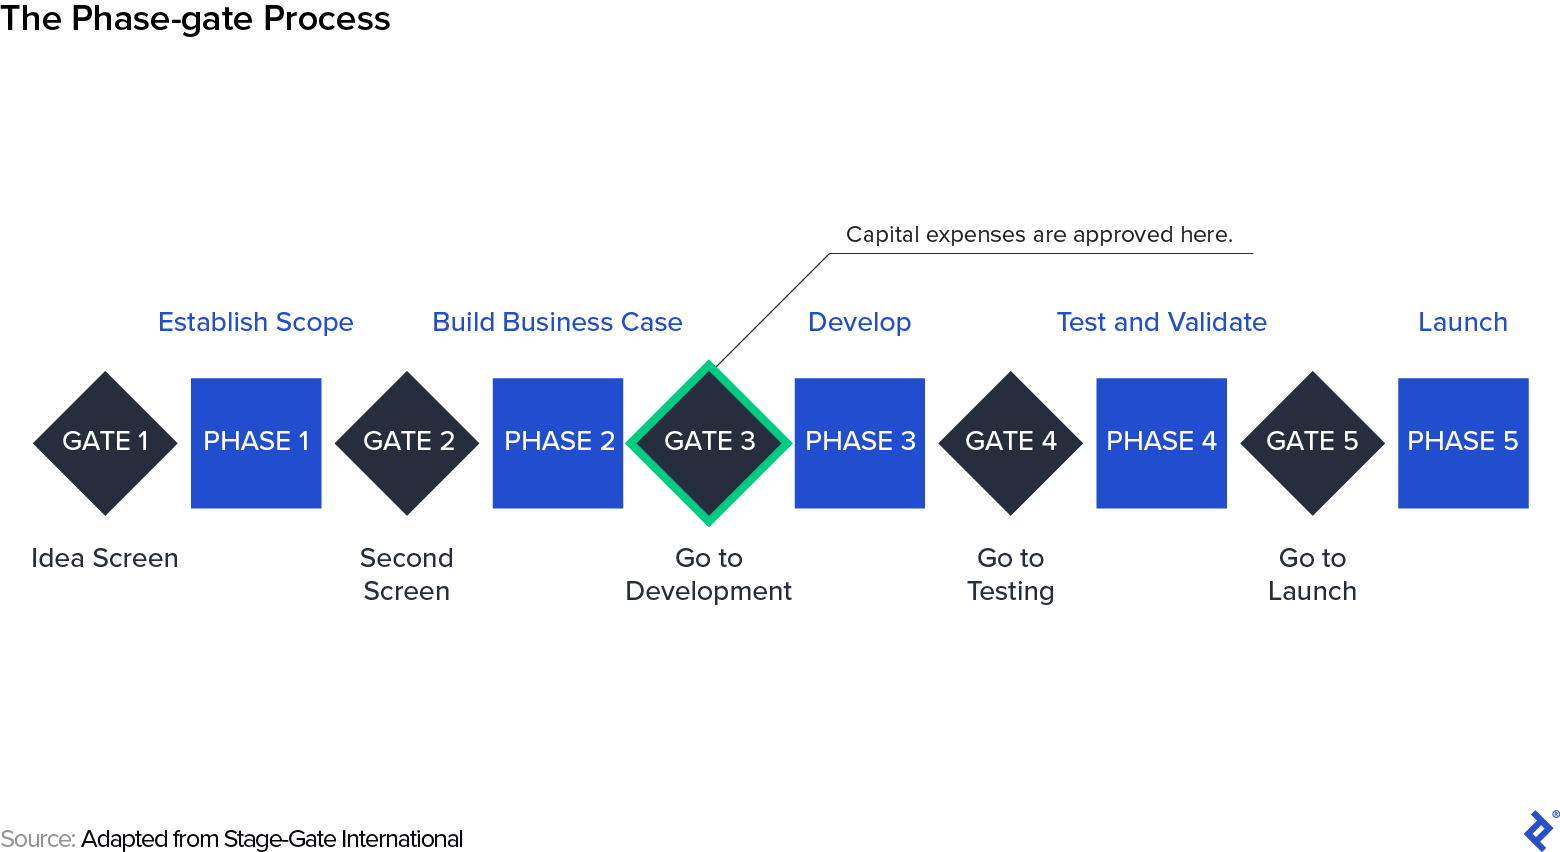 El proceso de puerta de fase: Establecer alcance, Crear caso de negocio, Desarrollar, Probar y validar, y Lanzar, y cinco puertas.  La puerta 3 es para gastos de capital.